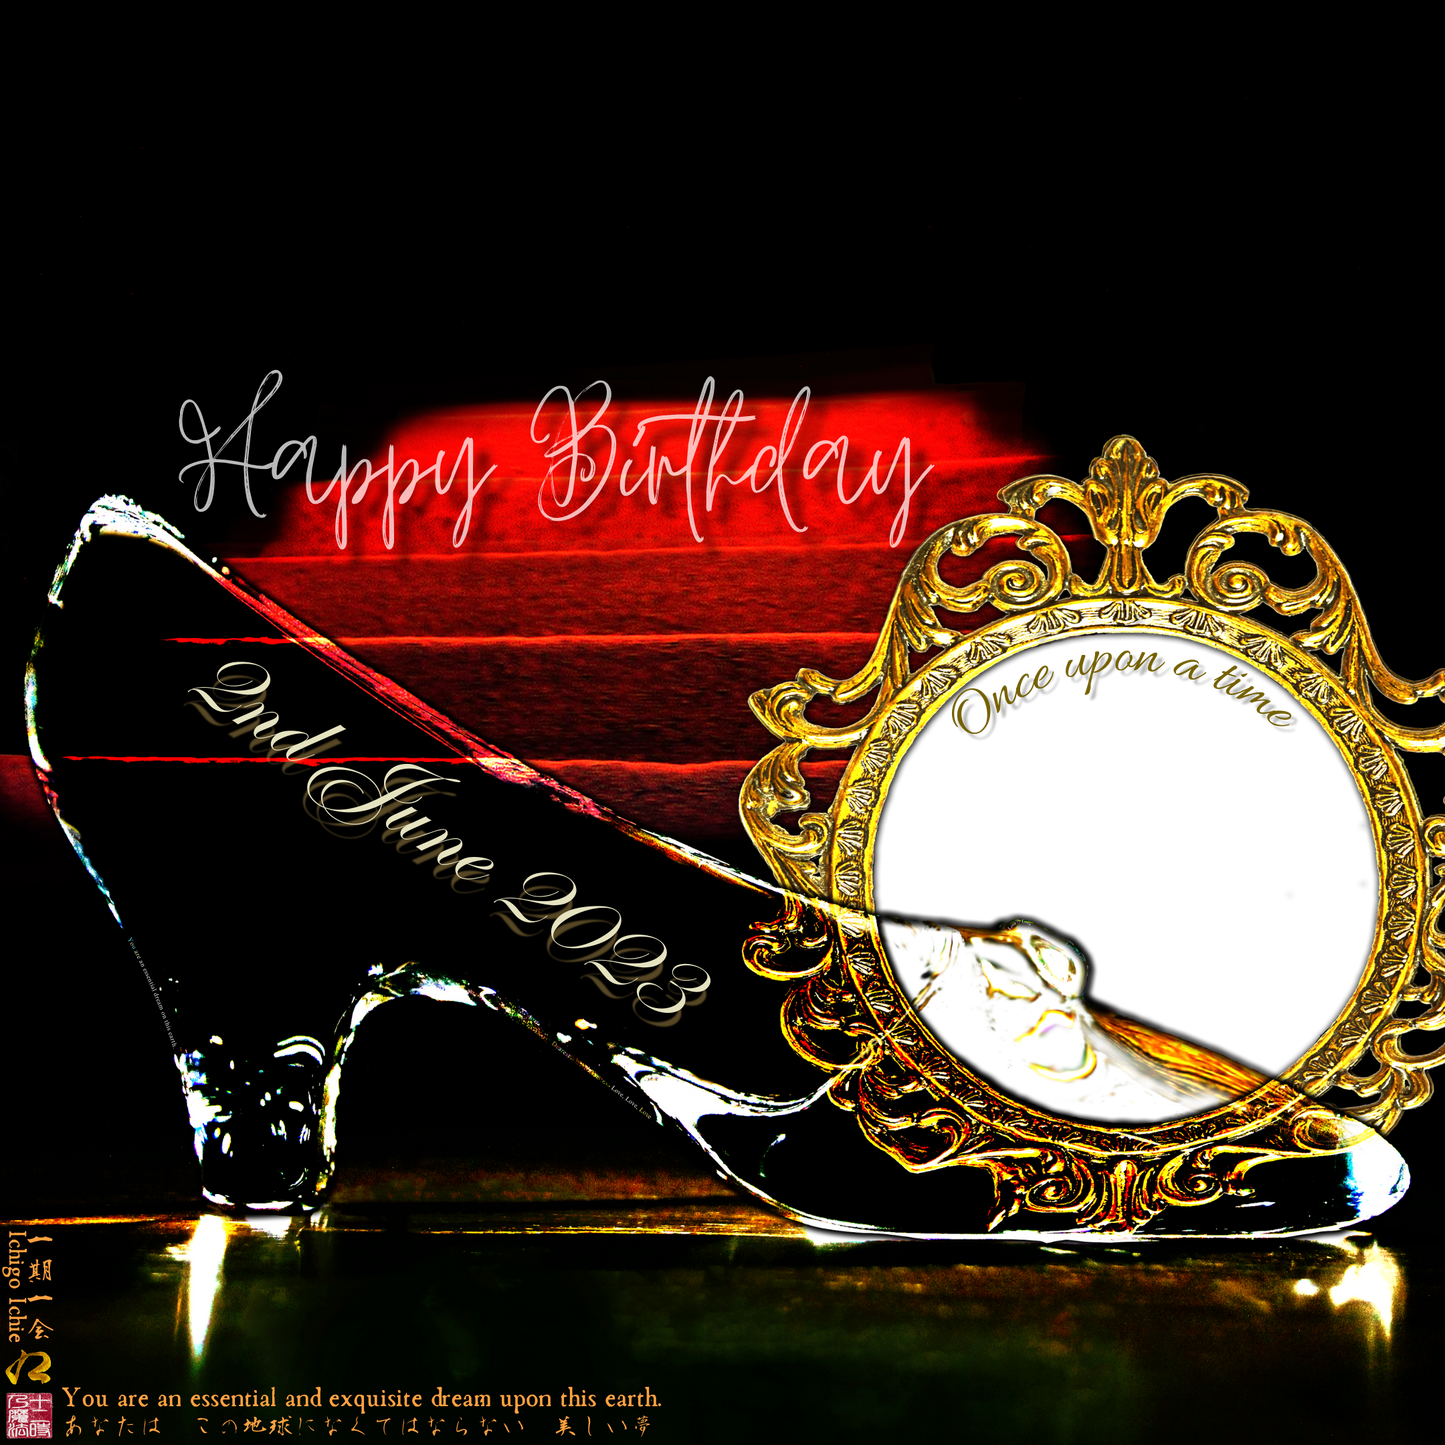 Happy Birthday Glass Slipper "Ichigo Ichie" 2nd June 2023 the Right (1-of-1) NFT Art